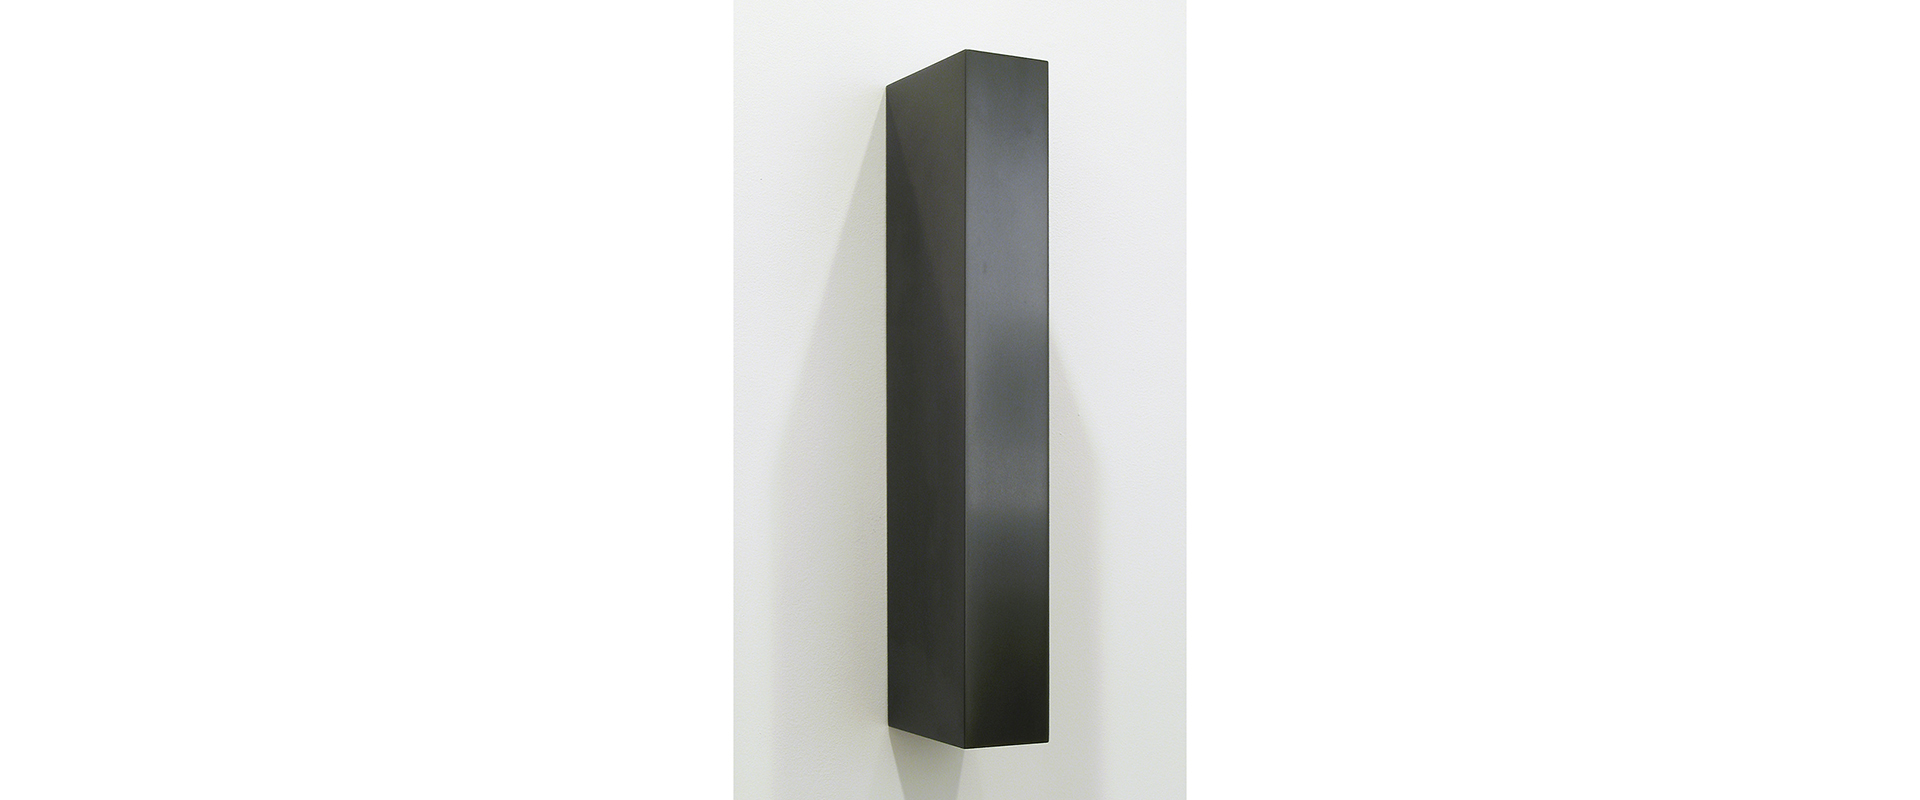 Untitled (Asymmetrical Vertical Bar) - 2007, gepresster Graphitstaub, gebrannt und poliert, 52,7 x 7,6 x 13,6 cm